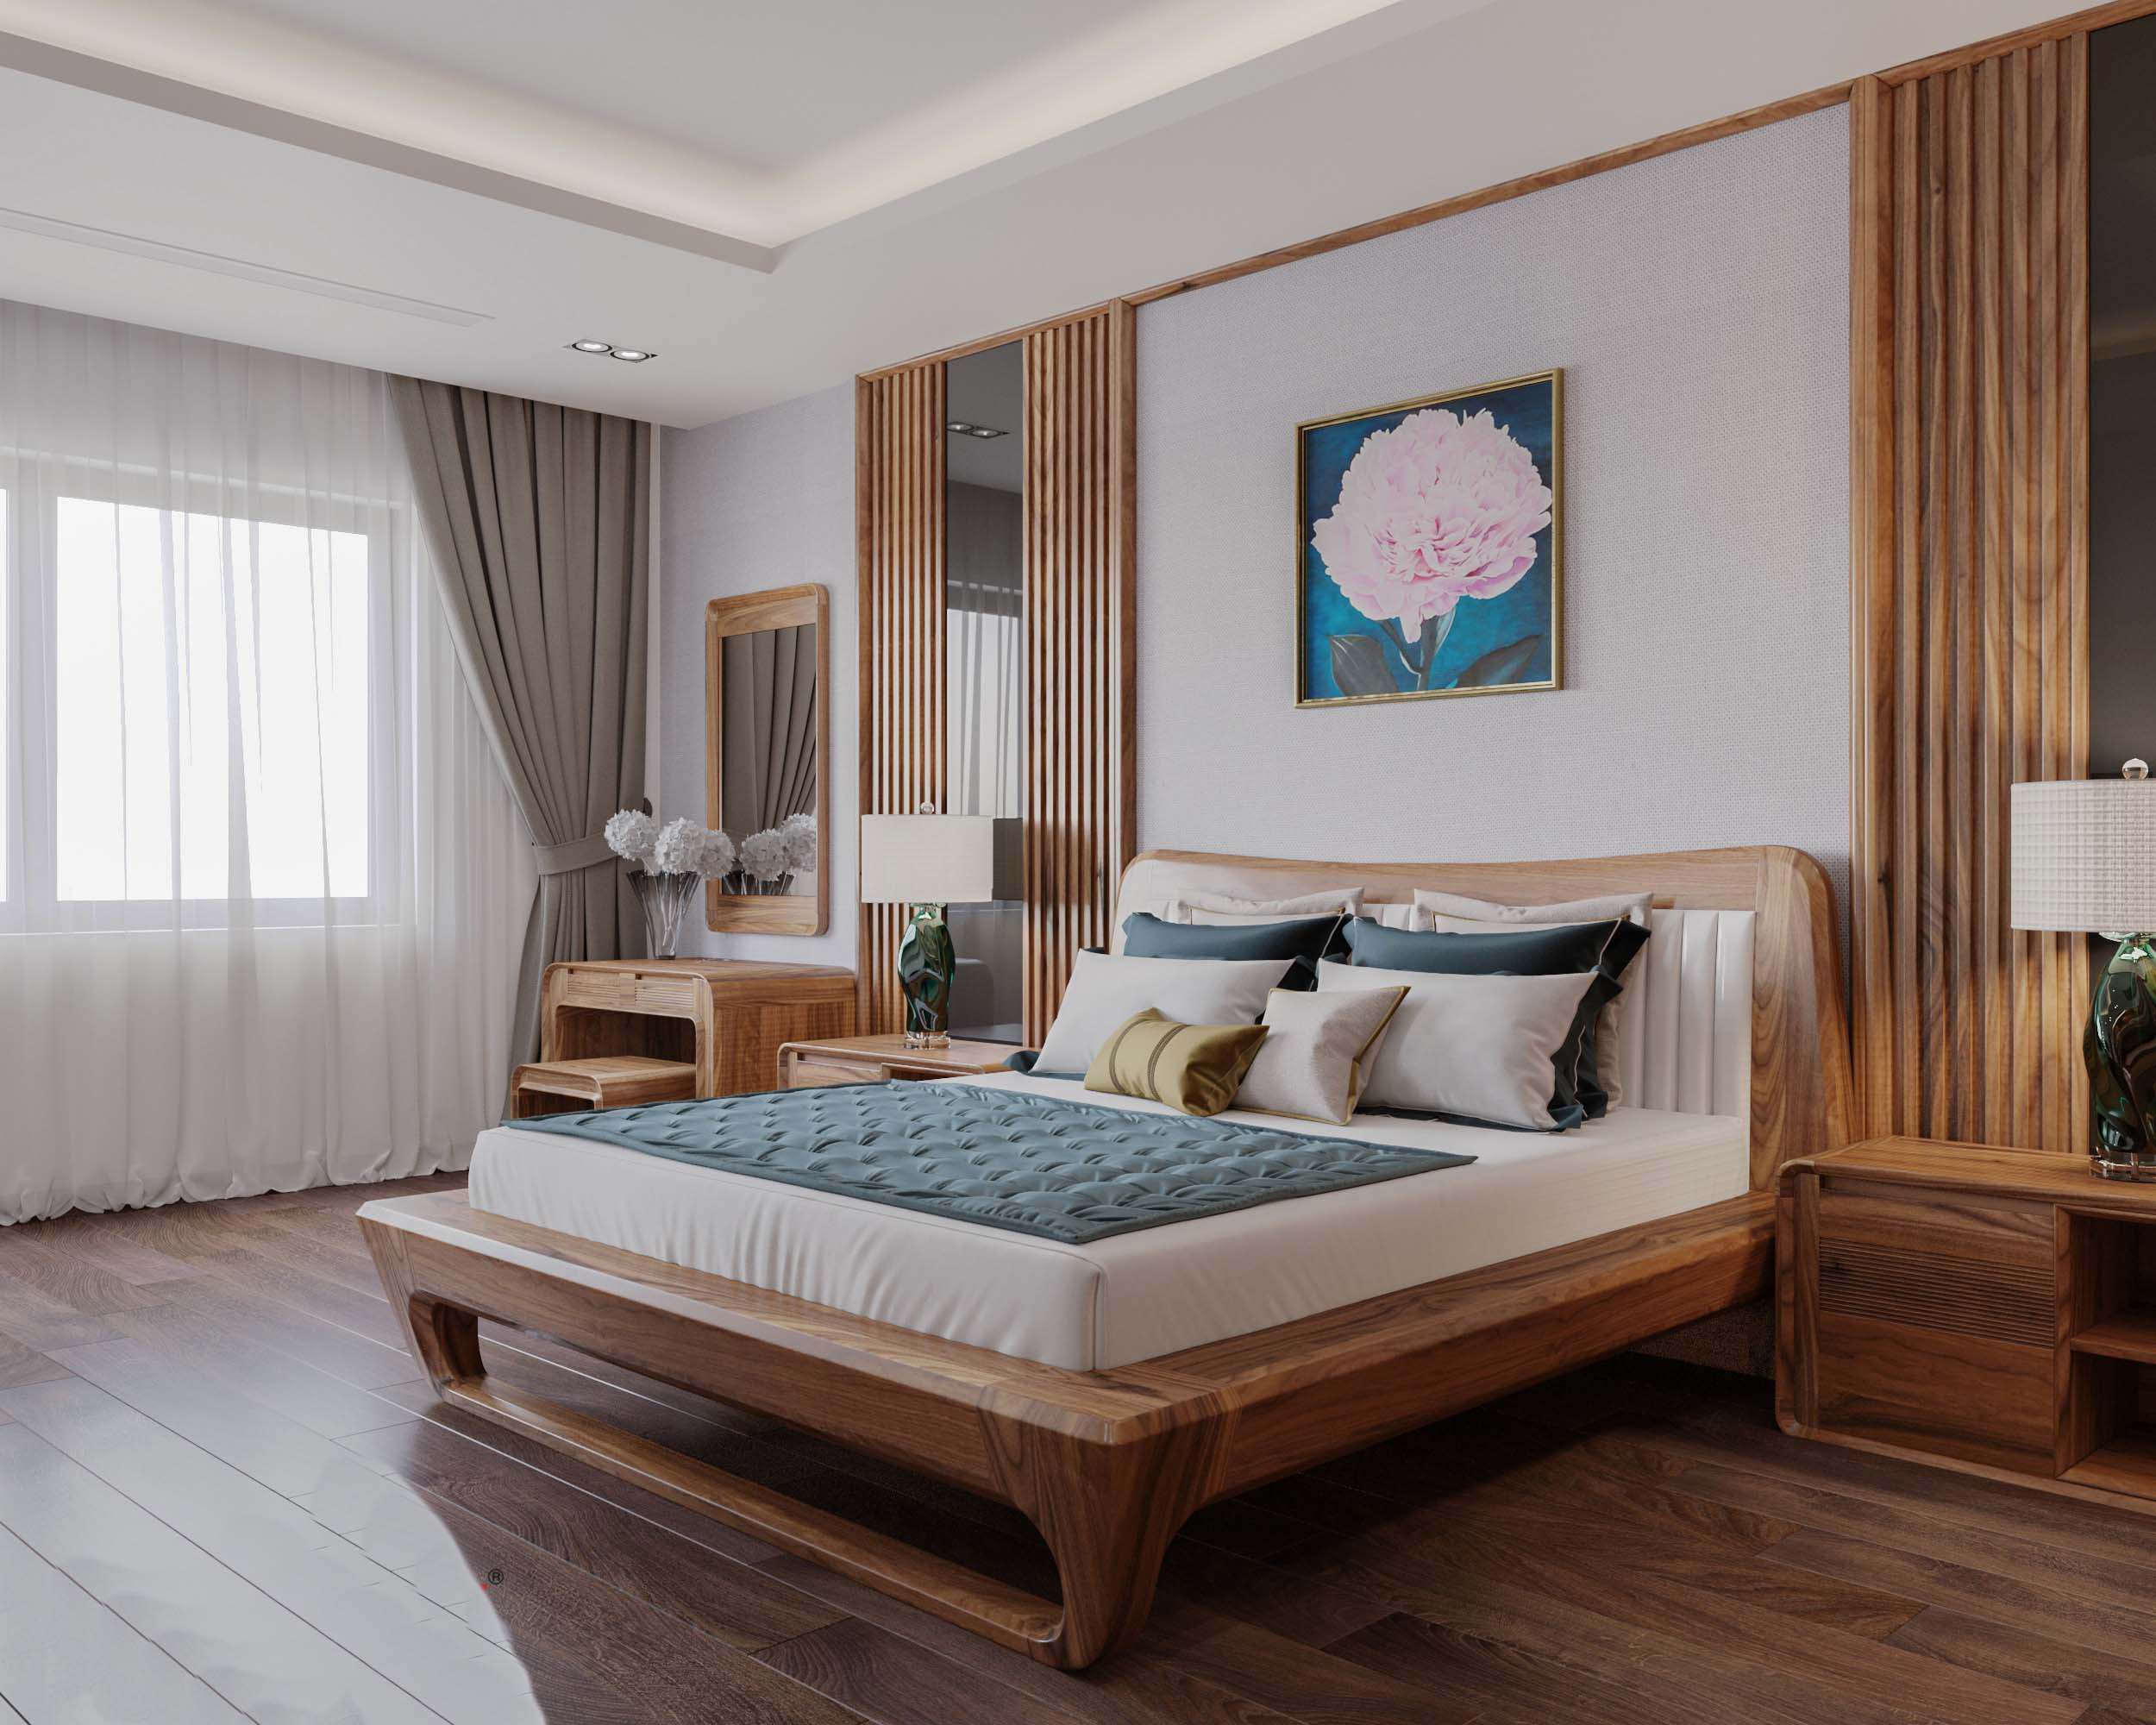 Nội thất phòng ngủ làm bằng gỗ xoan đào được nhiều khách hàng yêu thích